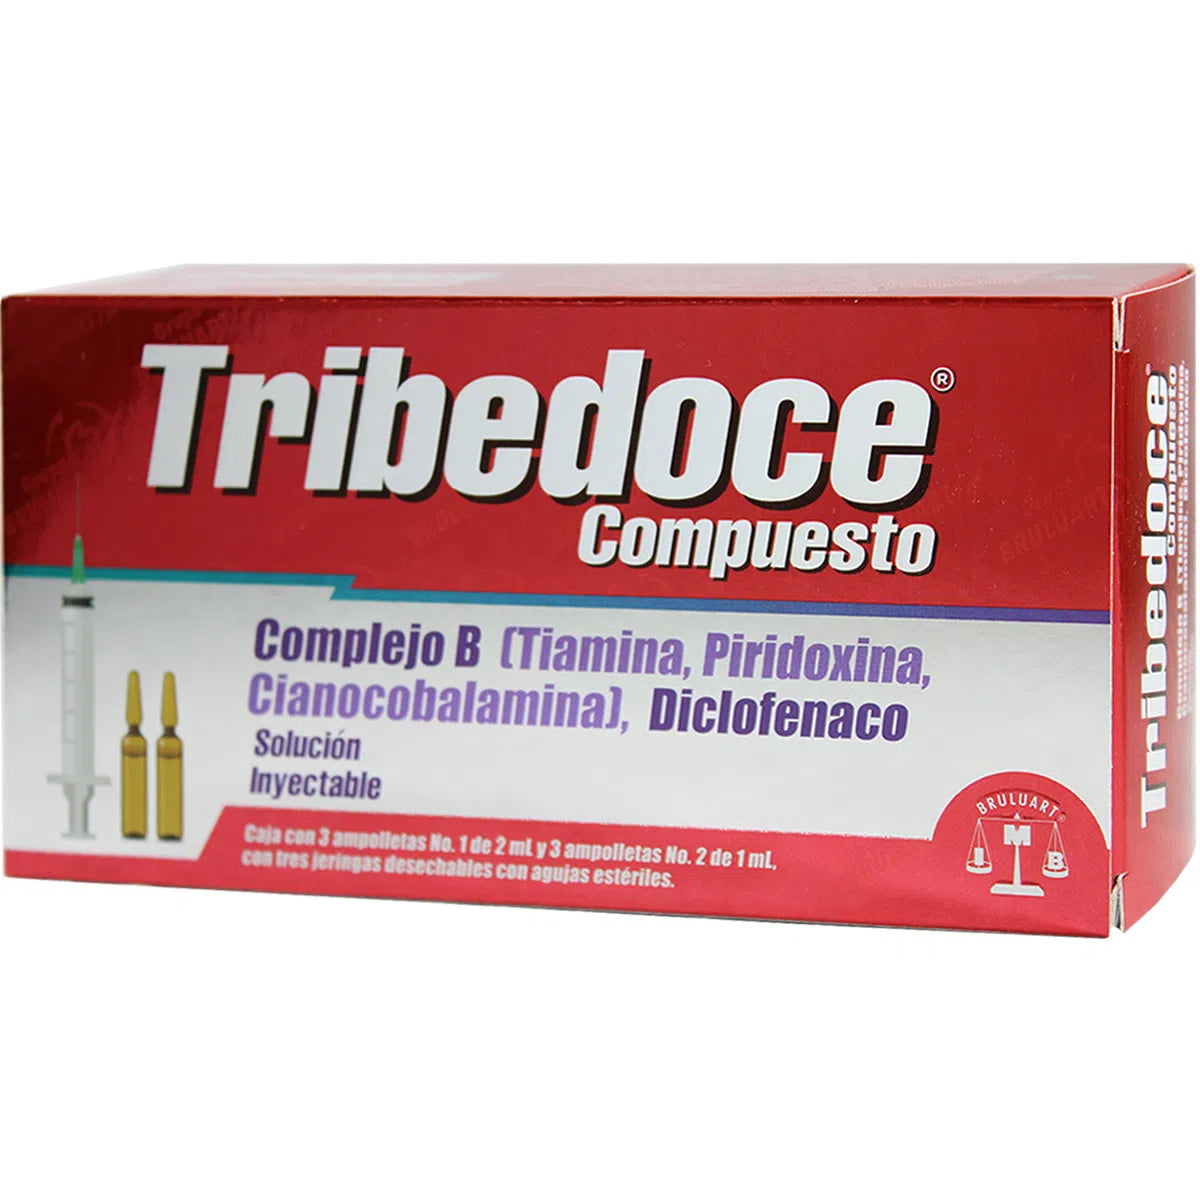 Tribedoce Compuesto Solución Inyectable 3 Ampolletas